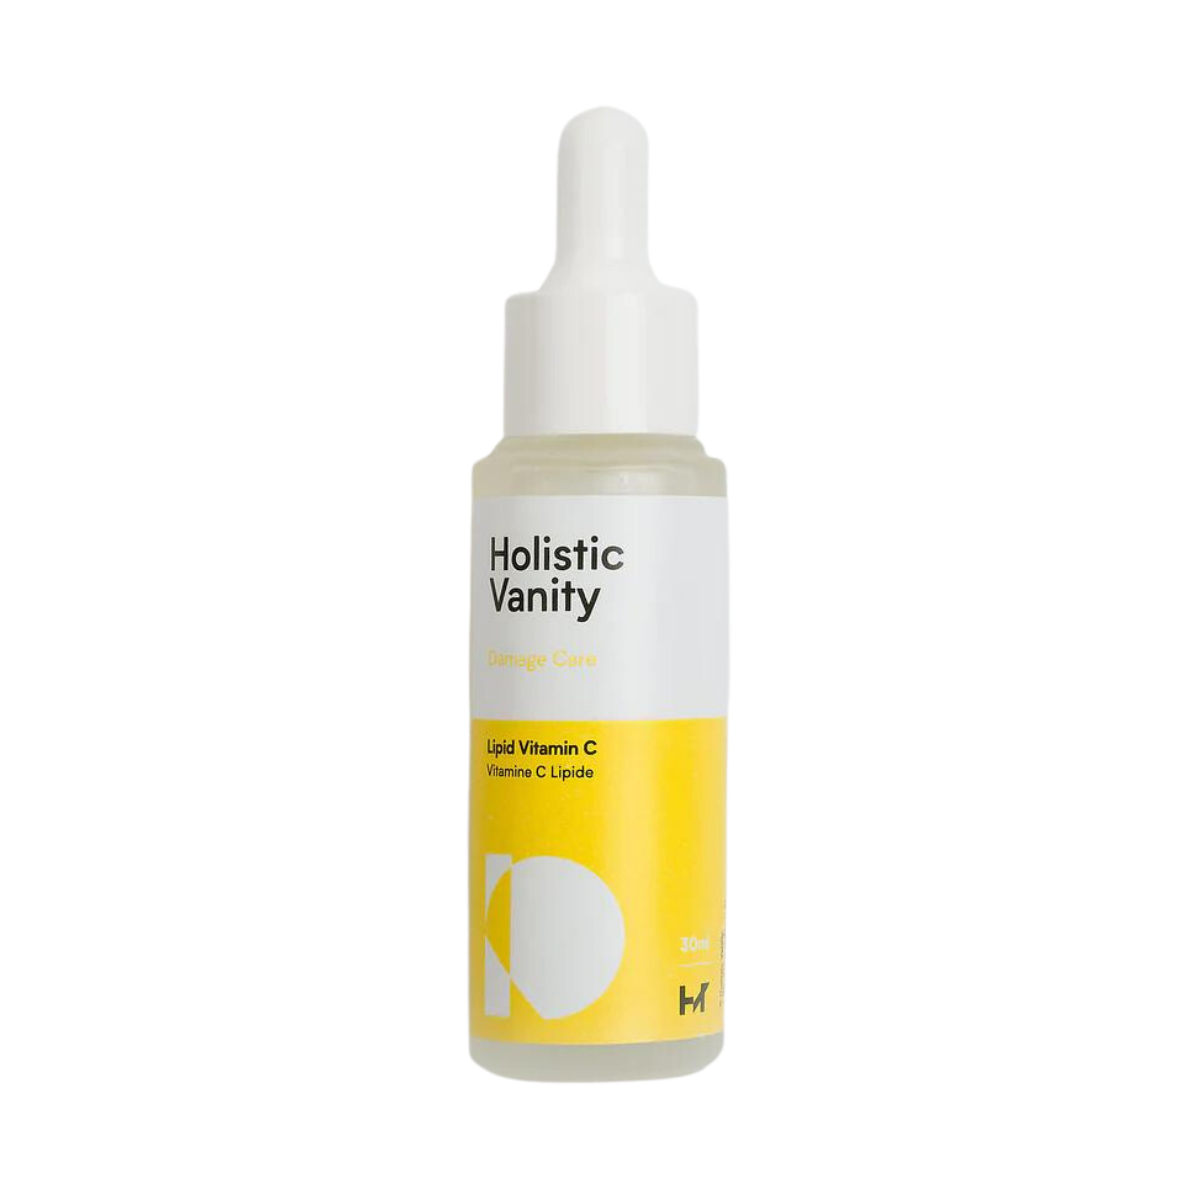 Holistic Vanity Lipid Vitamin C Serum